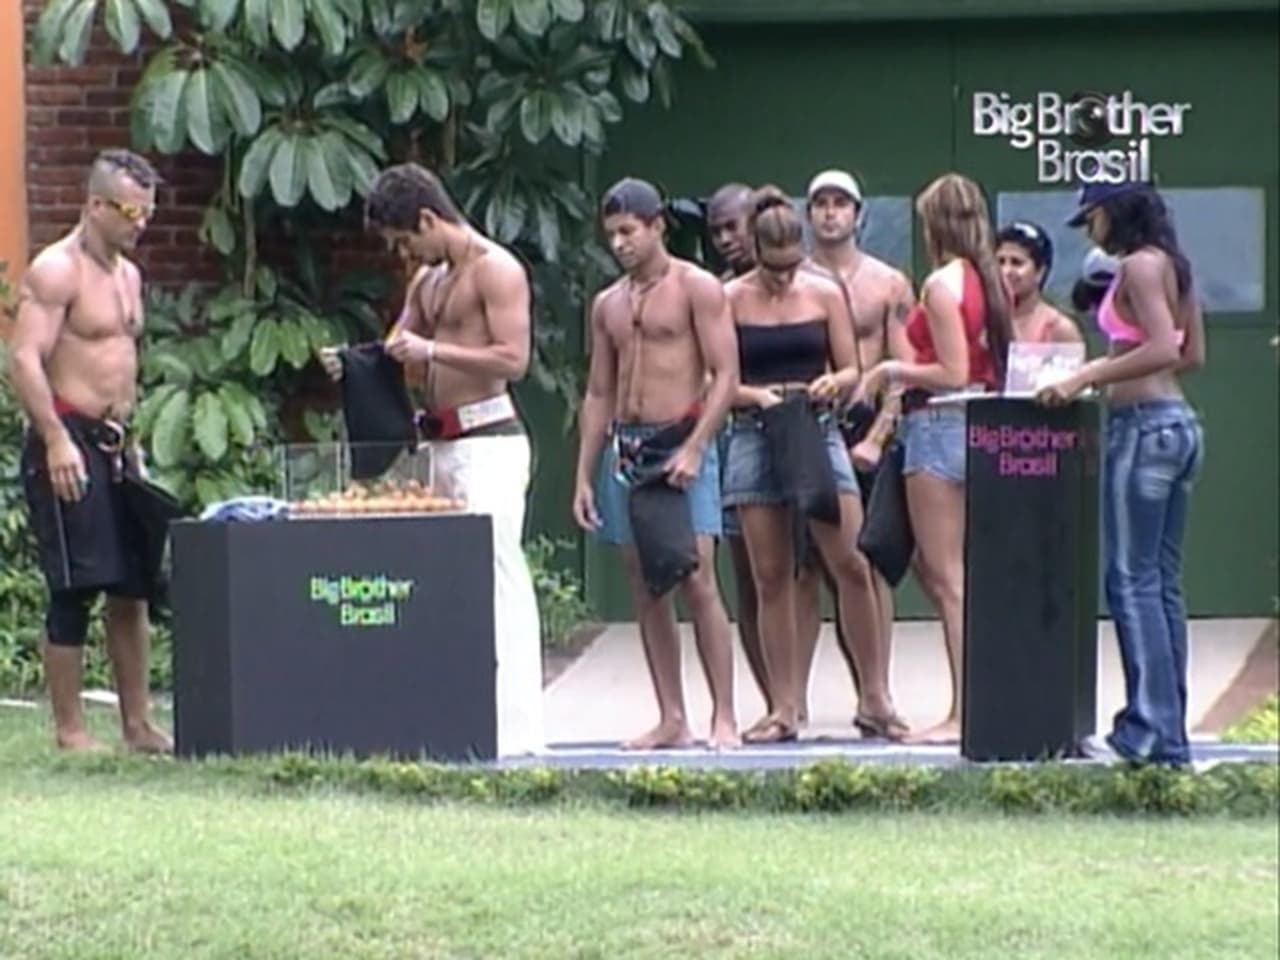 Big Brother Brasil - Season 4 Episode 39 : Episode 39